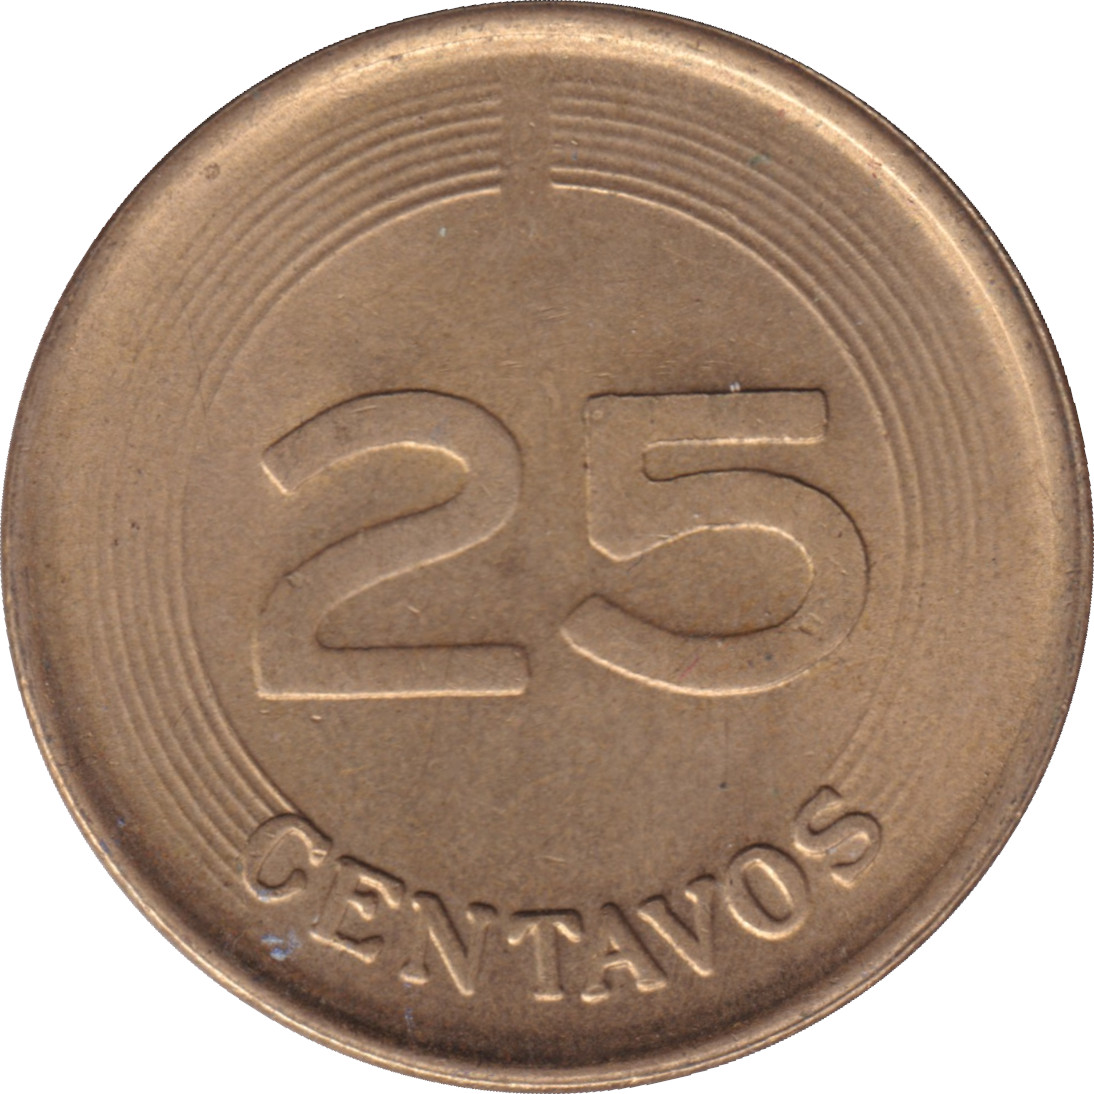 25 centavos - Santander